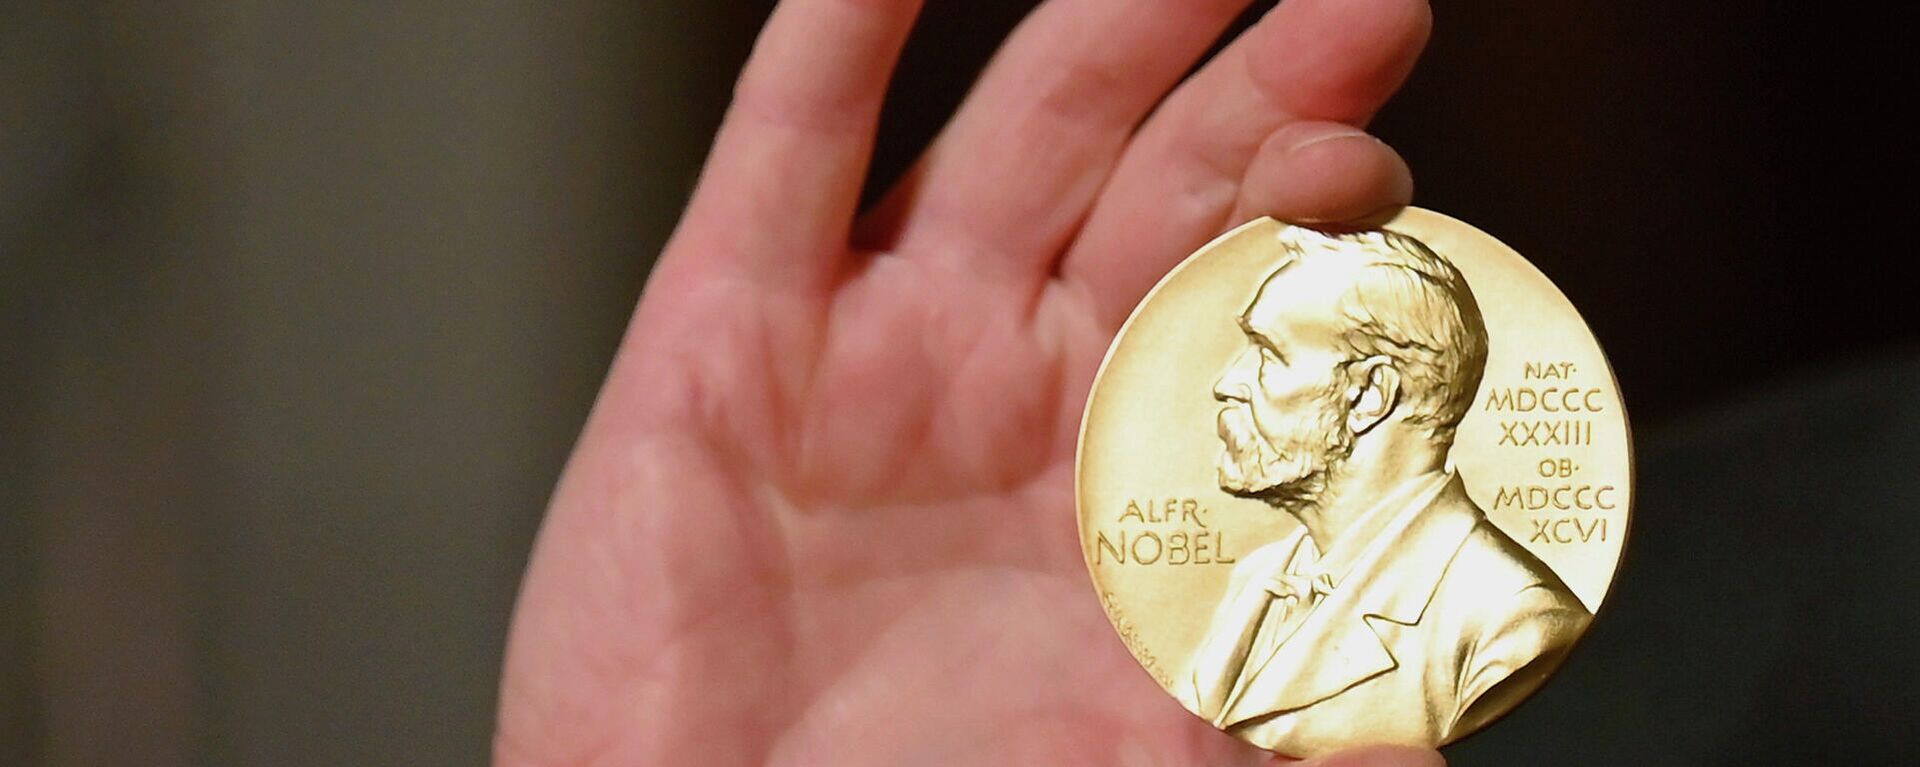 Медаль Нобелевской премии, фото из архива - Sputnik Азербайджан, 1920, 07.10.2021